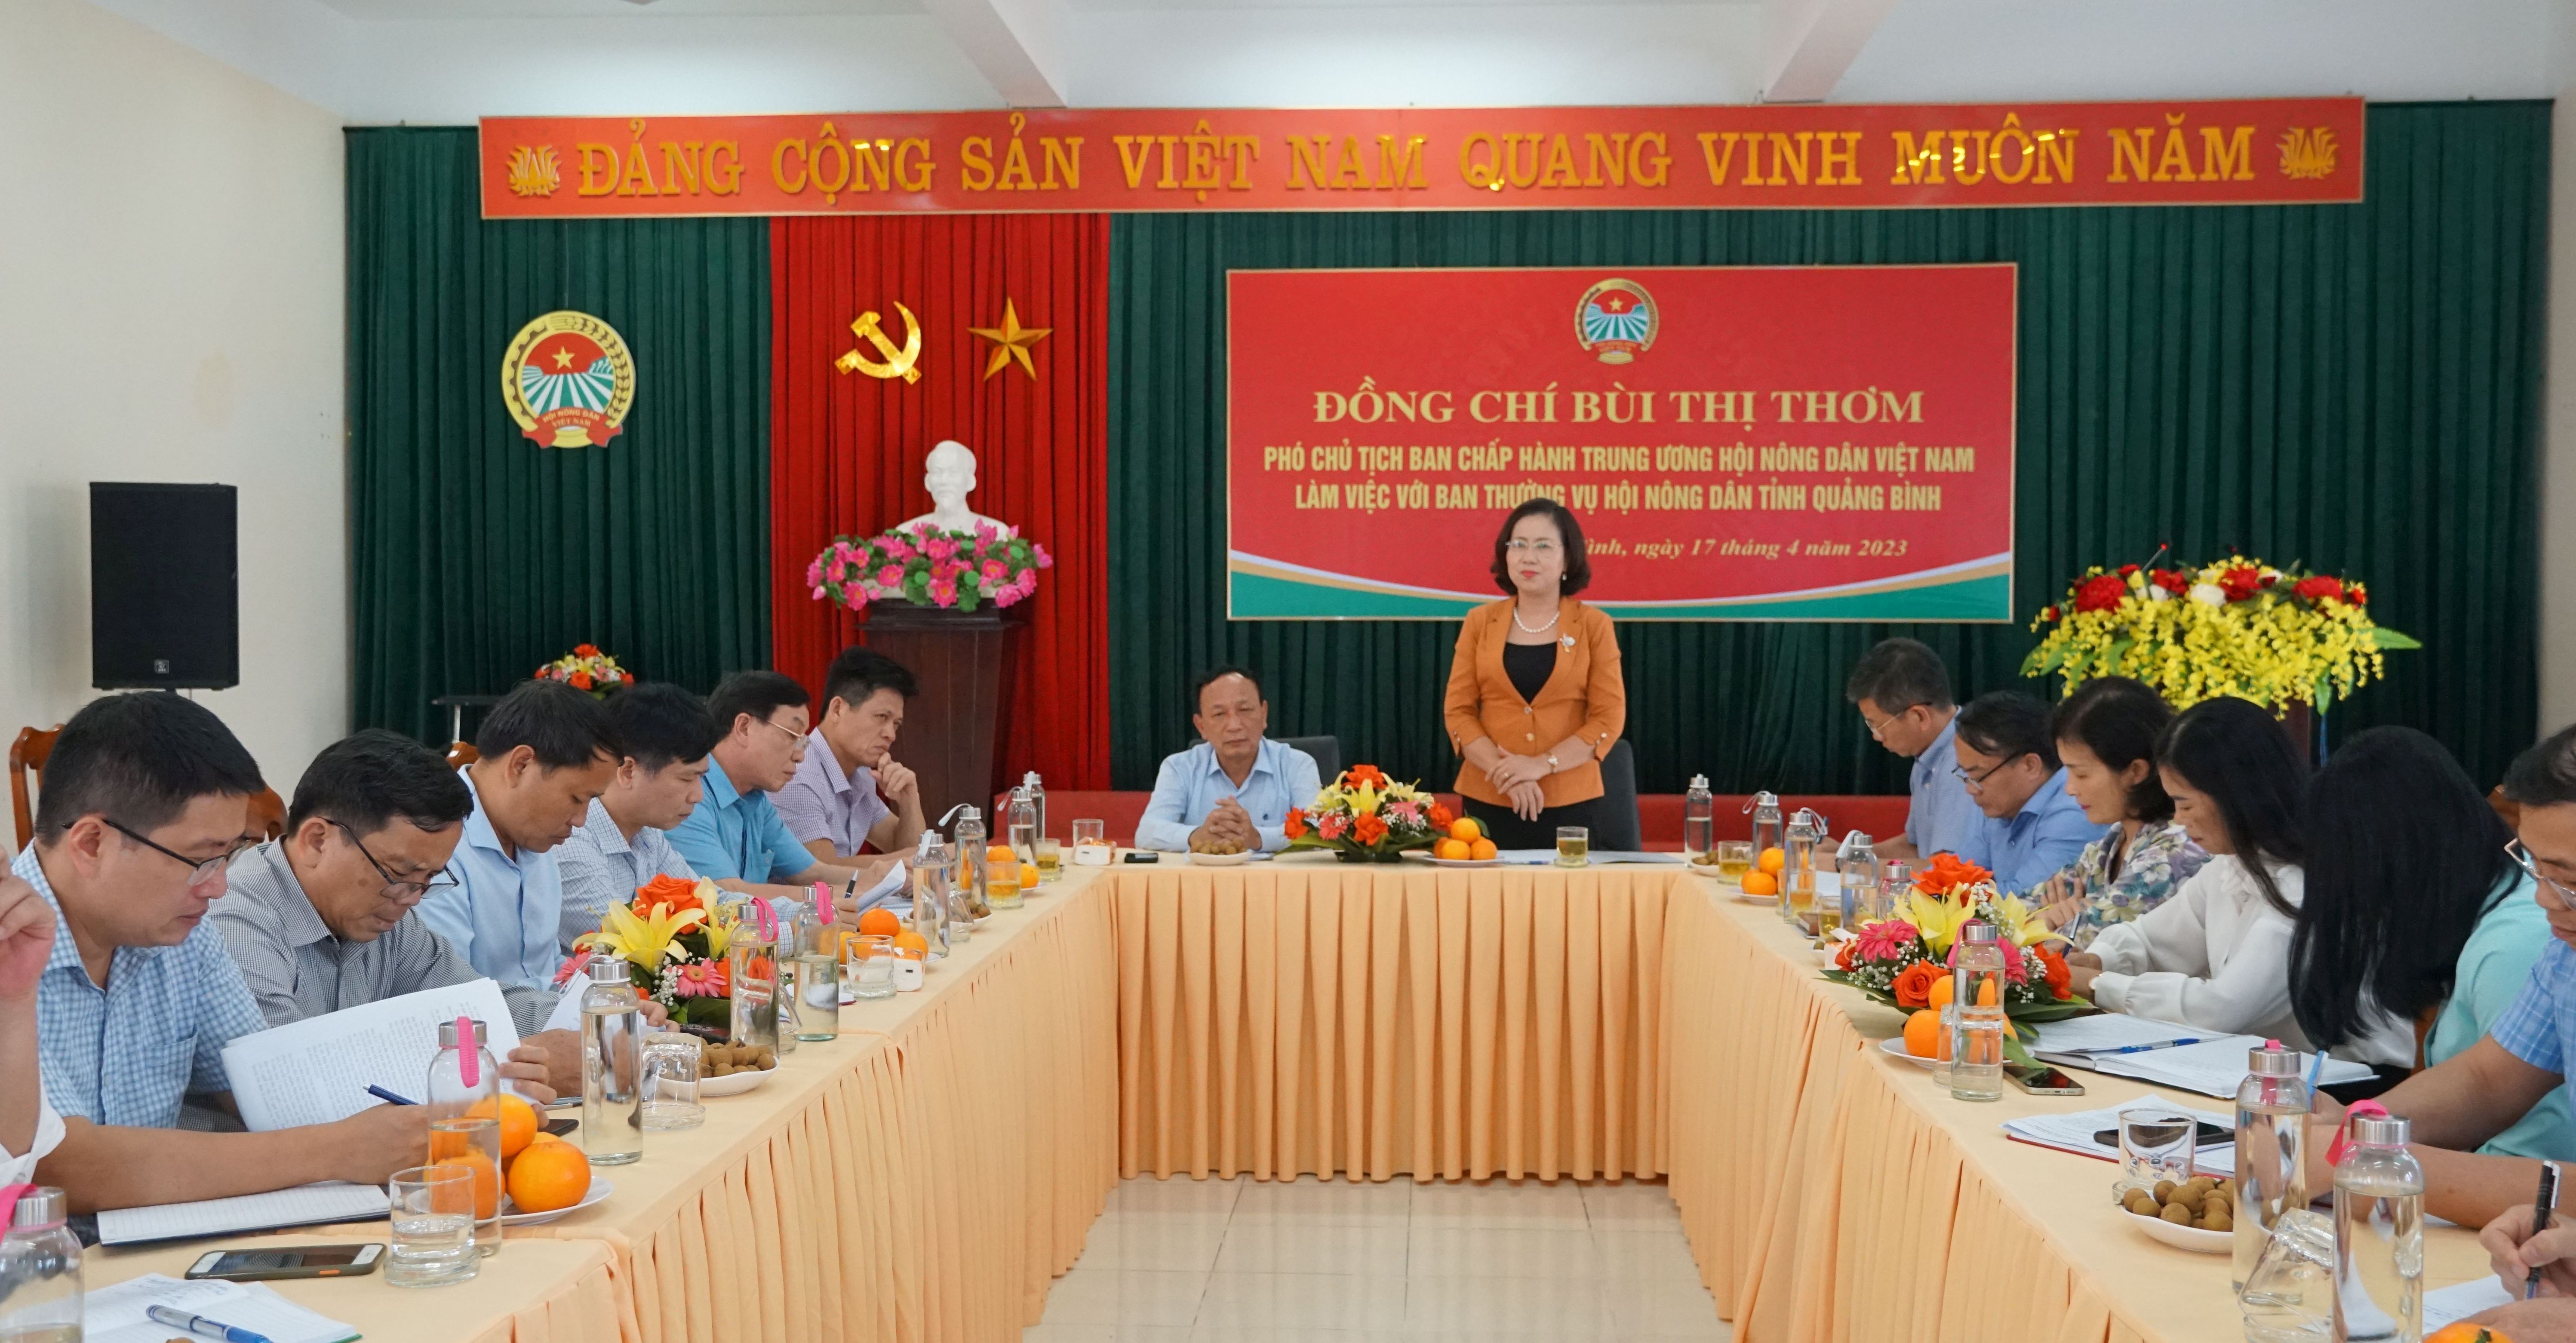 Phó Chủ tịch Ban Chấp hành Trung ương HND Việt Nam Bùi Thị Thơm làm việc với HND tỉnh.